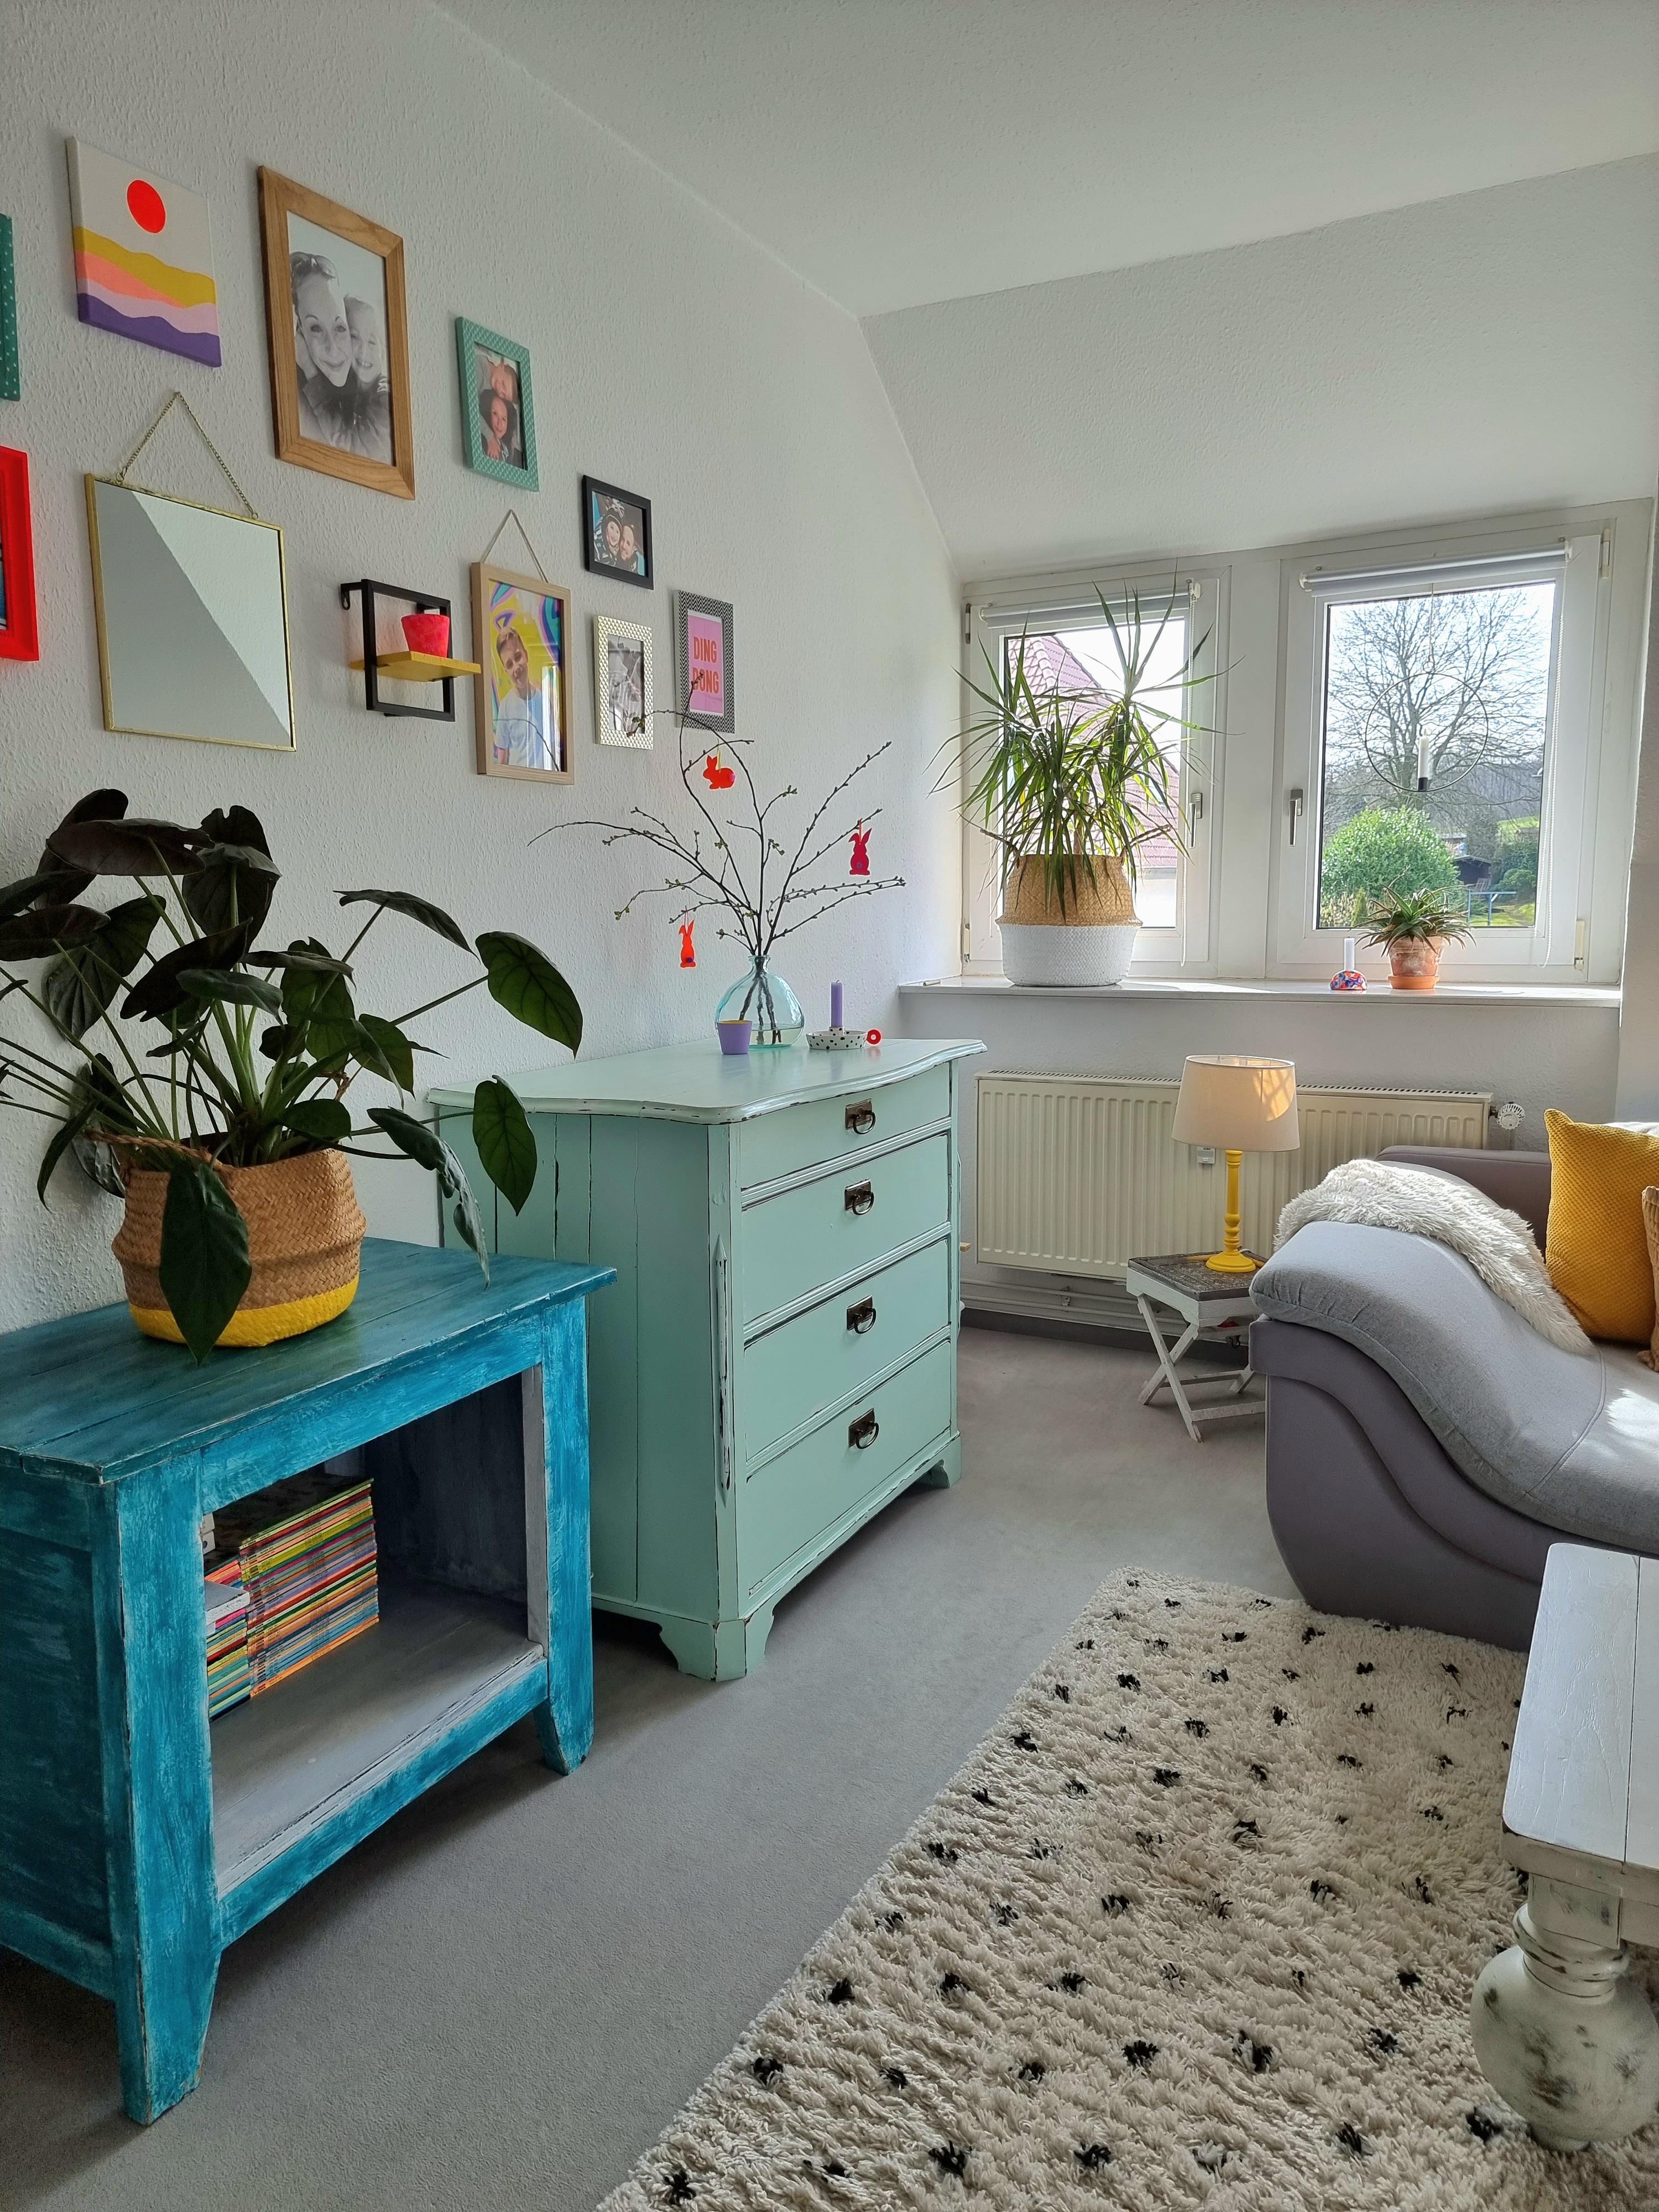 Sonnige Grüße☀️ aus dem #Wohnzimmer #vintagehome #colorfulhome #diy #paintingfurniture #osterdeko #interior #mixandmatch